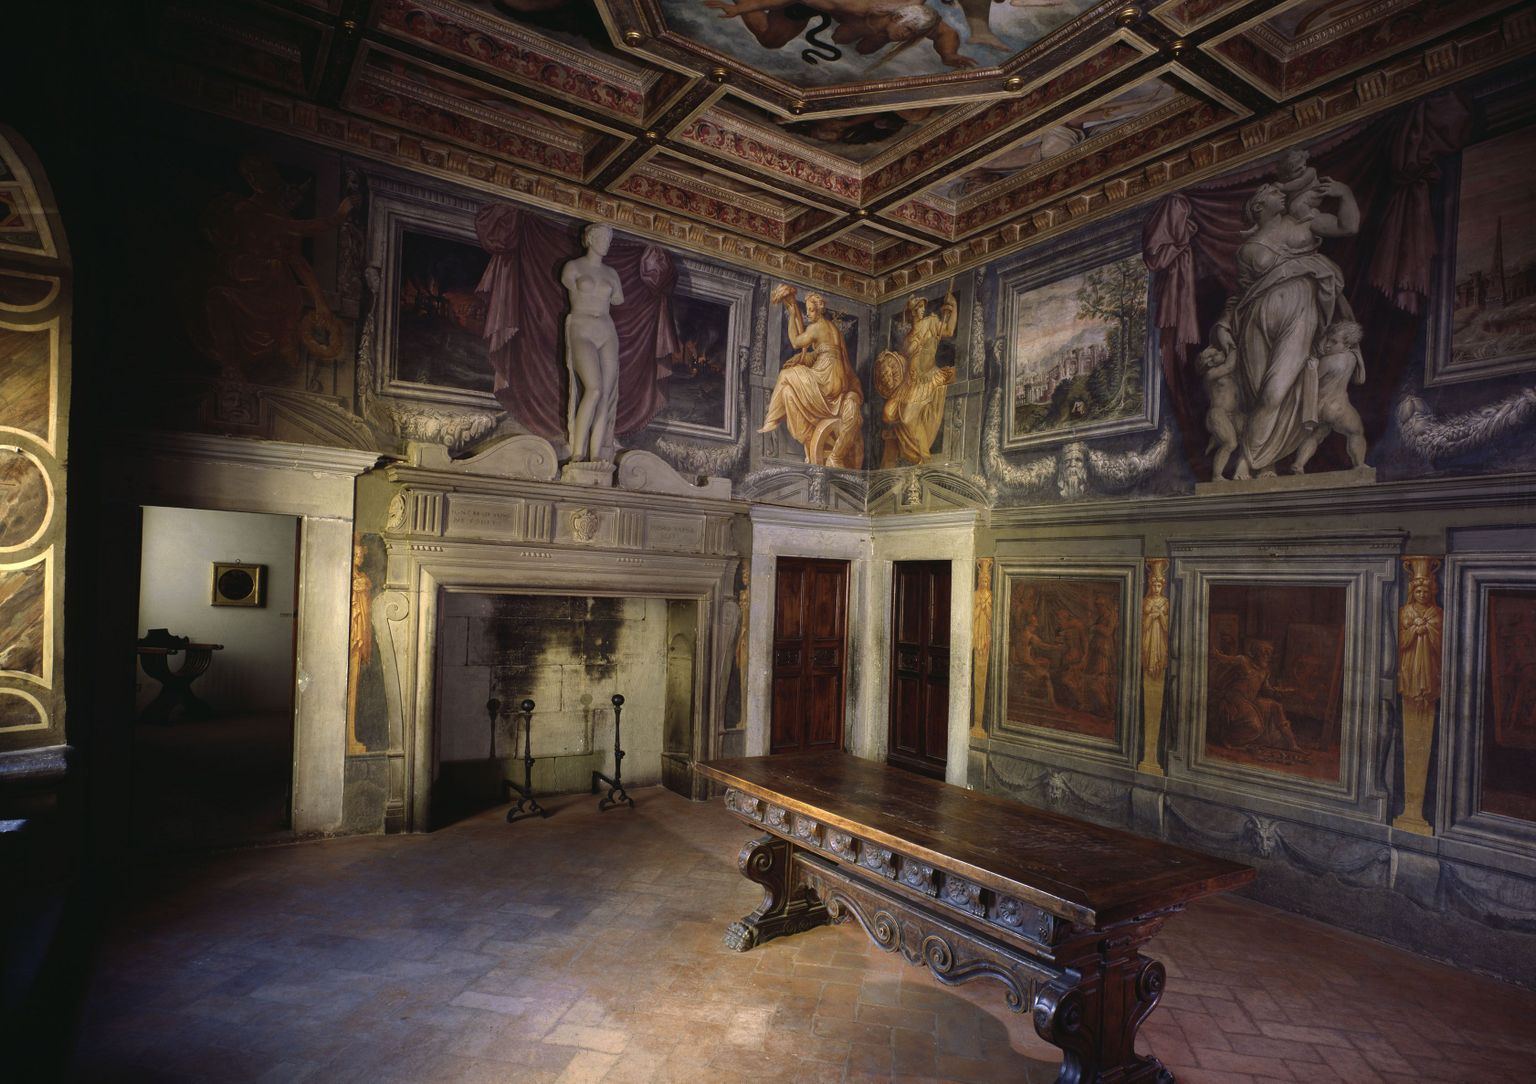 Saal Giorgio Vasari majas, kunstnik töötas oma kodu dekoreerimise kallal alates 1542. aastast üle kahekümne aasta, praegu asub Casa di Vasaris muuseum.